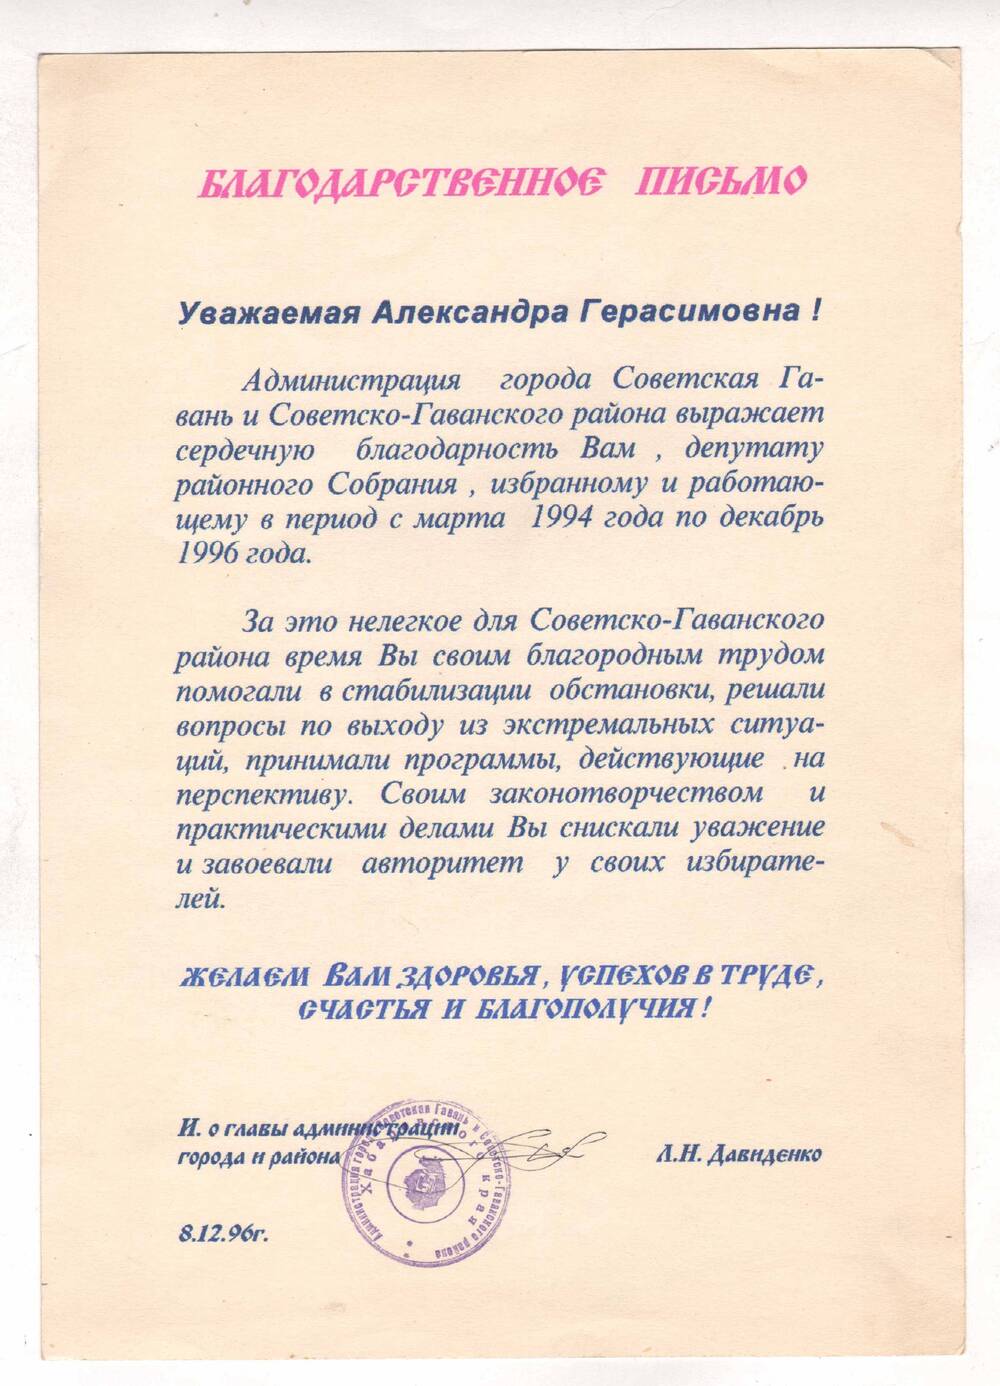 Благодарственное письмо Сметаниной А.Г. депутату избранному и работающему в период с марта 1994 по декабрь 1996